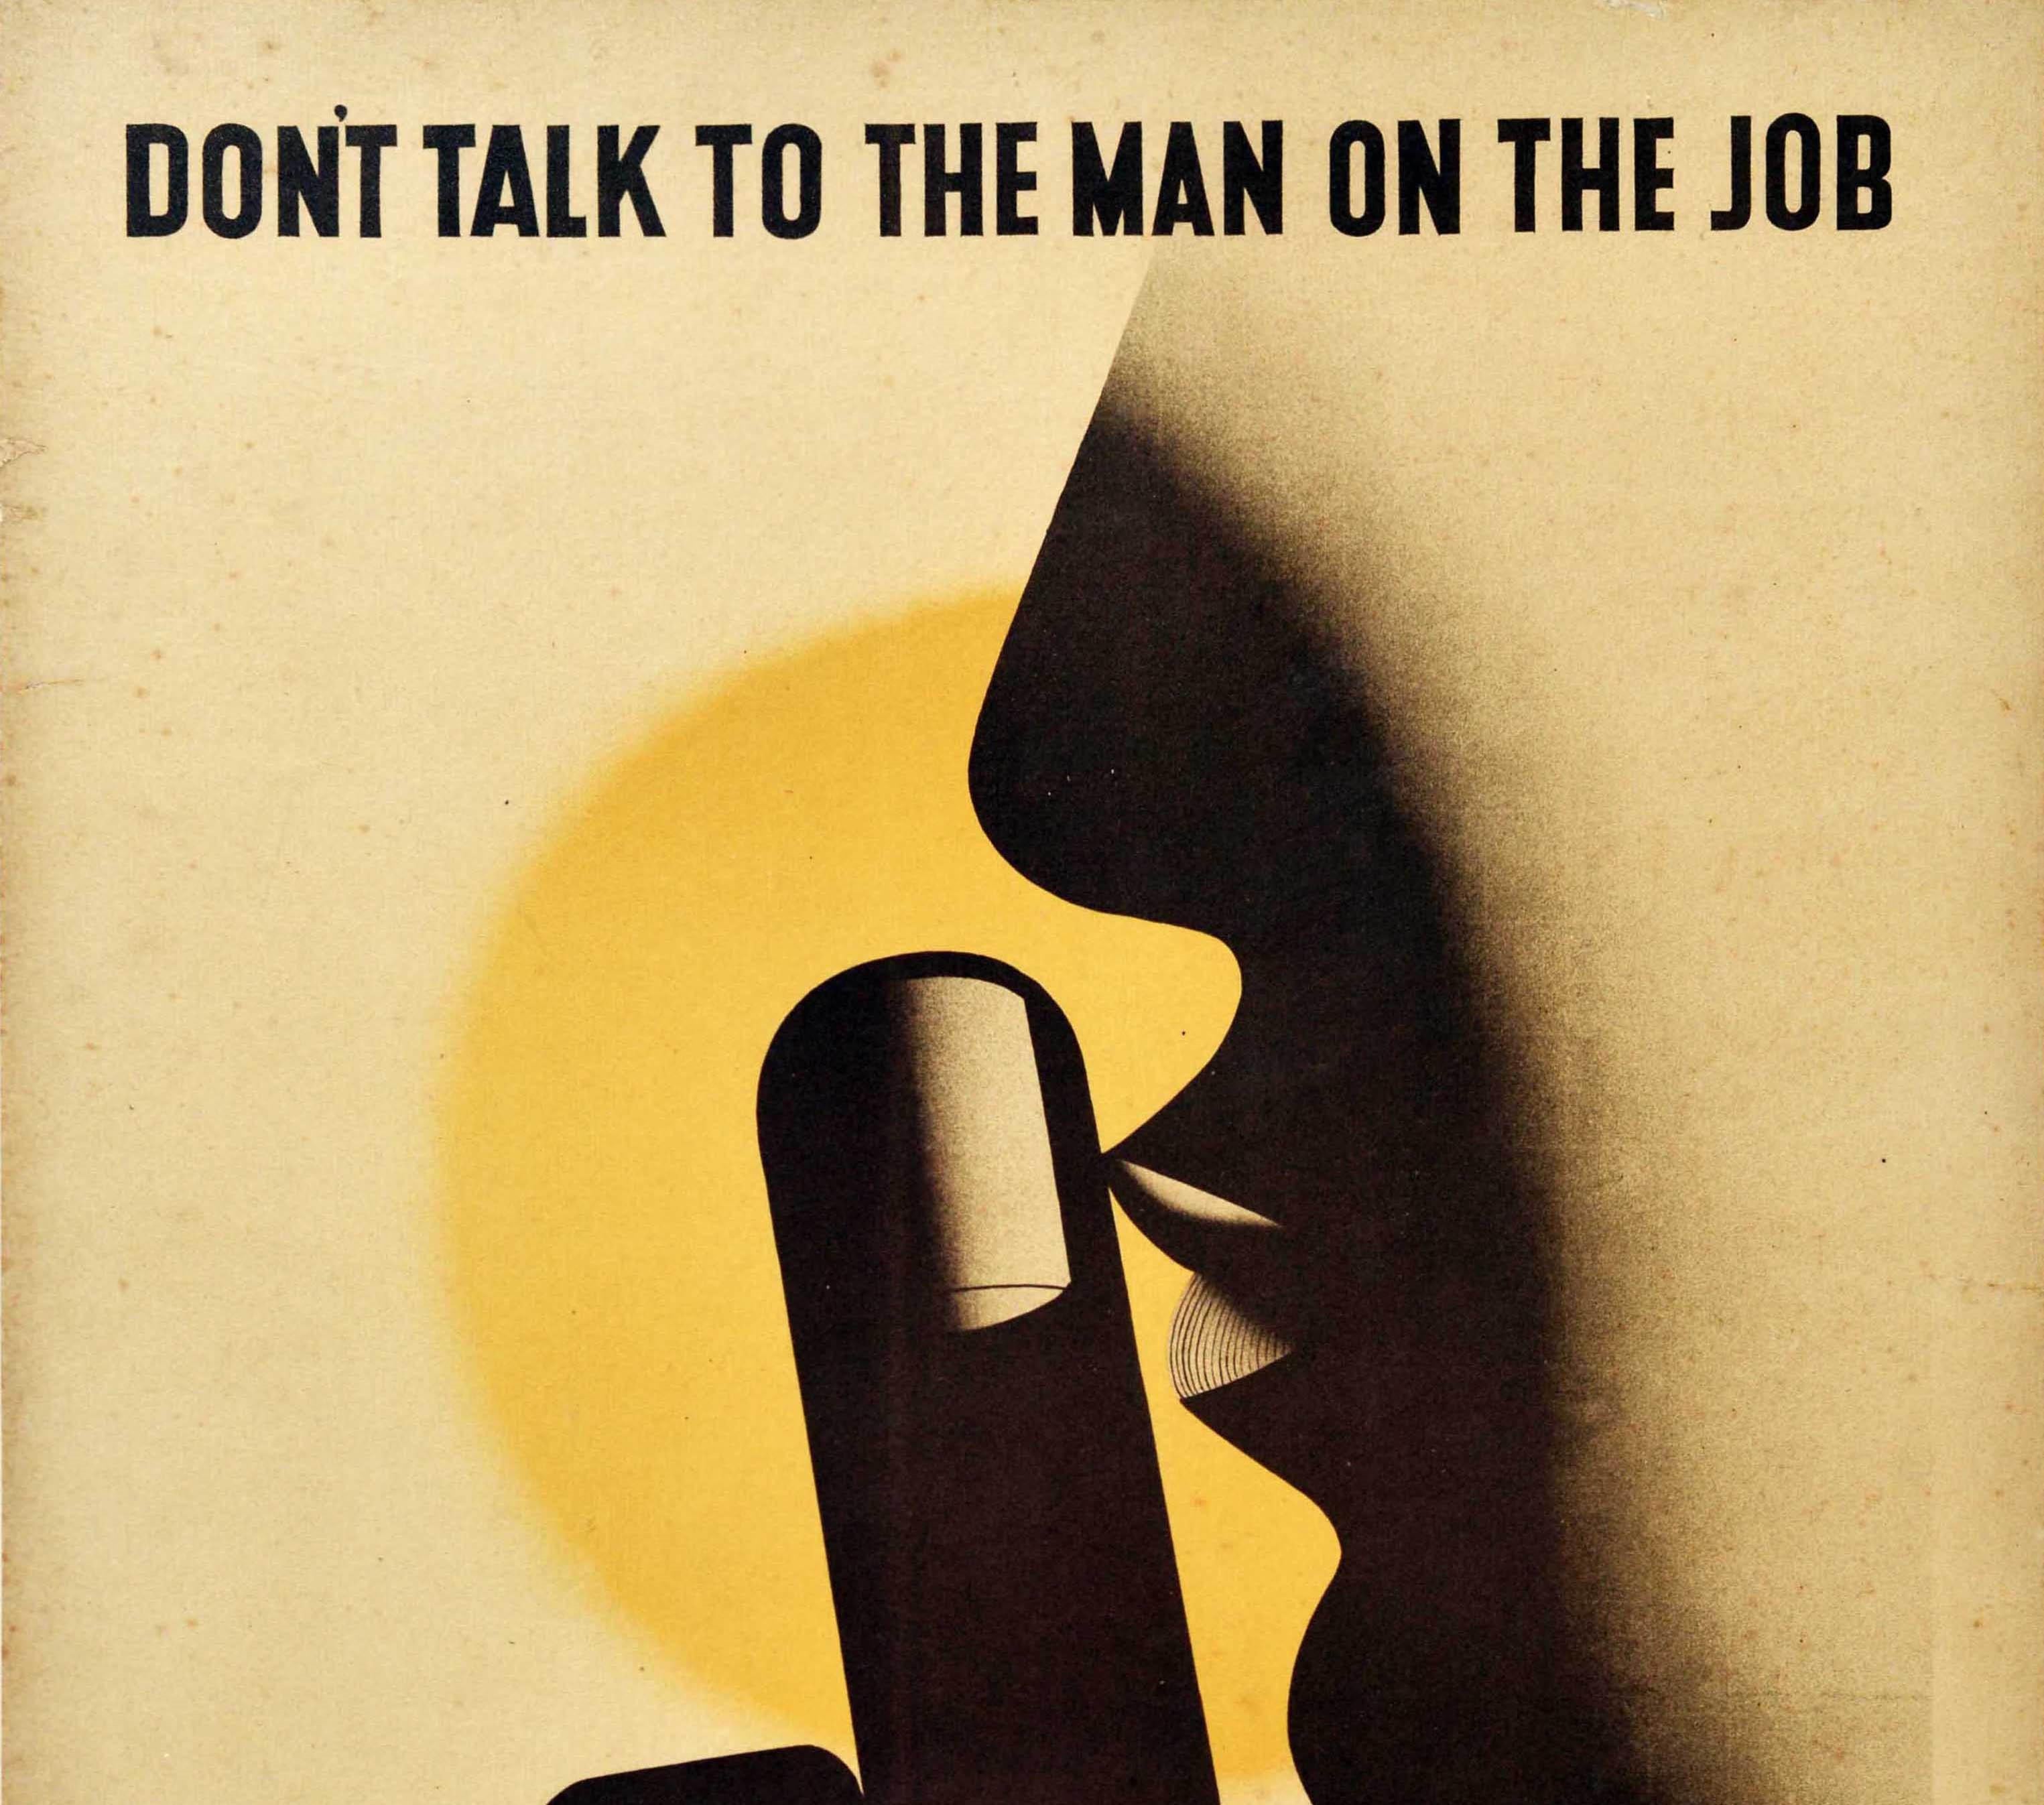 Originales Vintage-Poster zum Thema Gesundheit und Sicherheit am Arbeitsplatz - Don't talk to the man on the job - mit einem großartigen Design des bekannten Künstlerduos Tom Eckersley (1914-1997) und Eric Lombers (1914-1978), das einen Mann mit dem